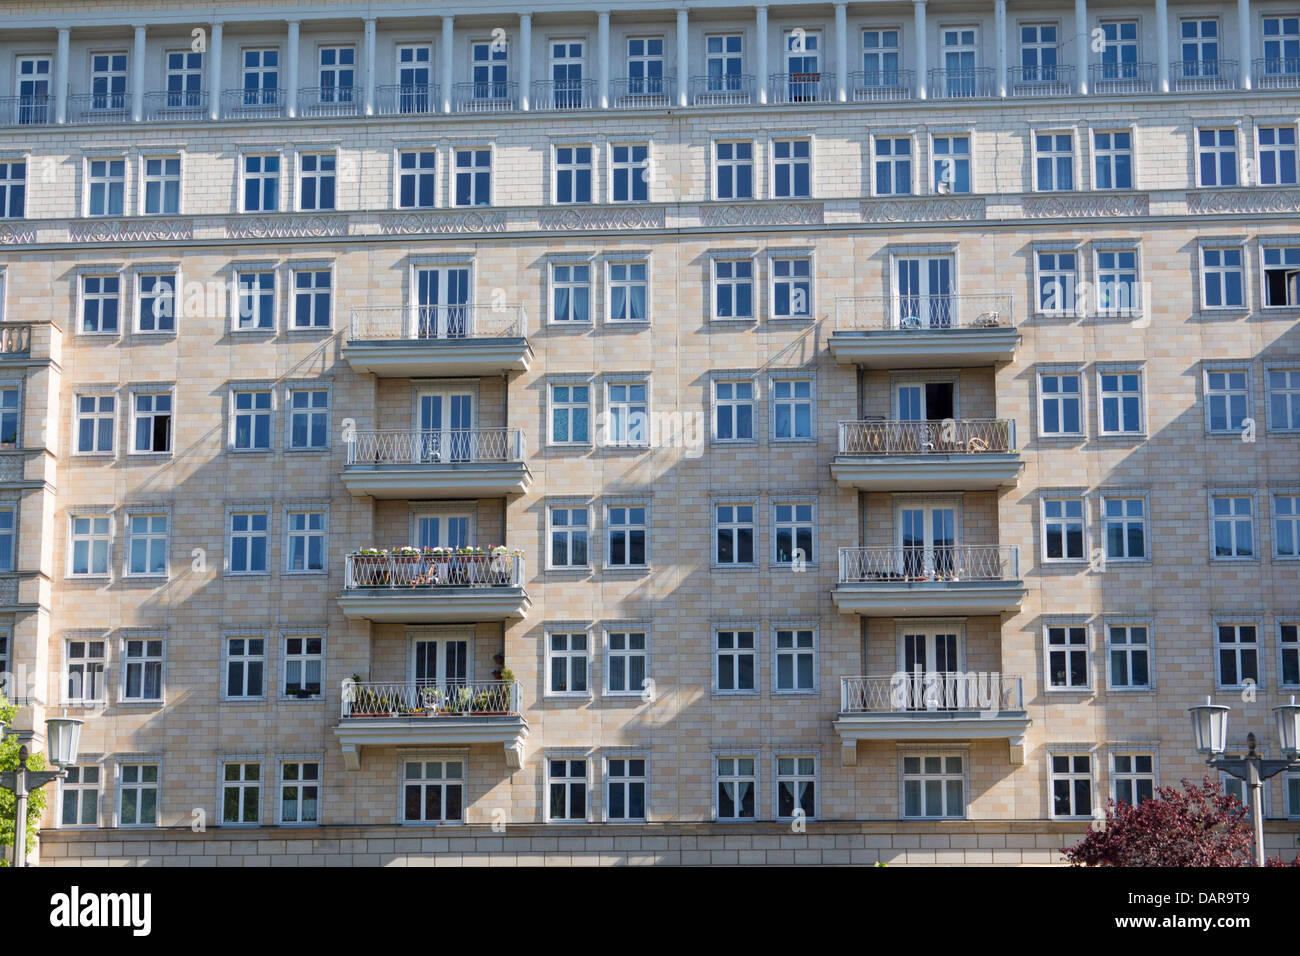 Karl Marx Allee des immeubles d'appartements de style architectural distinctif réaliste socialiste Friedrichshain Berlin Allemagne Banque D'Images